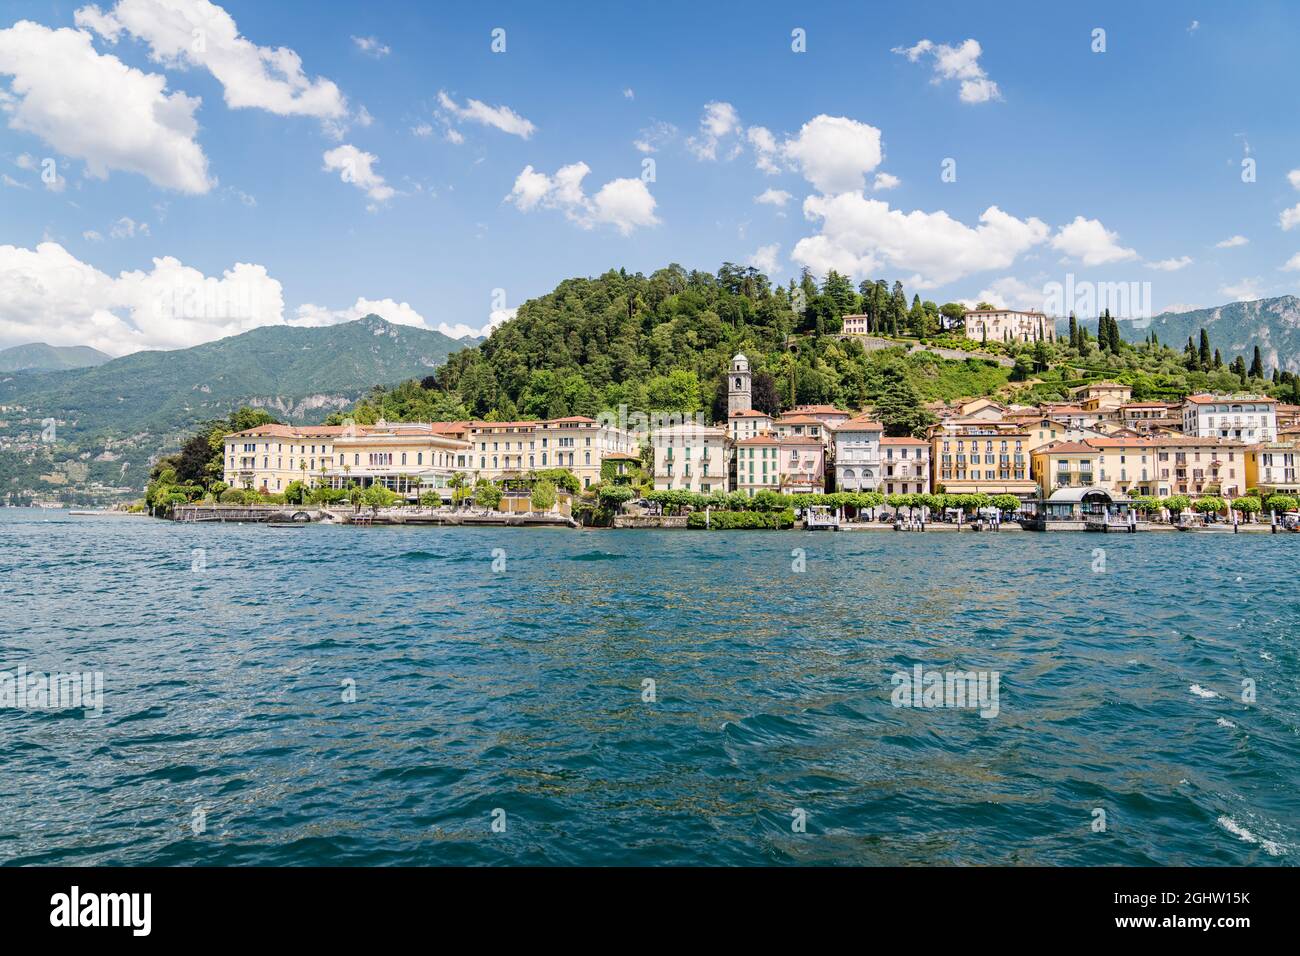 Blick auf das Dorf Bellagio vom Comer See, Lombardei, Italien Stockfoto